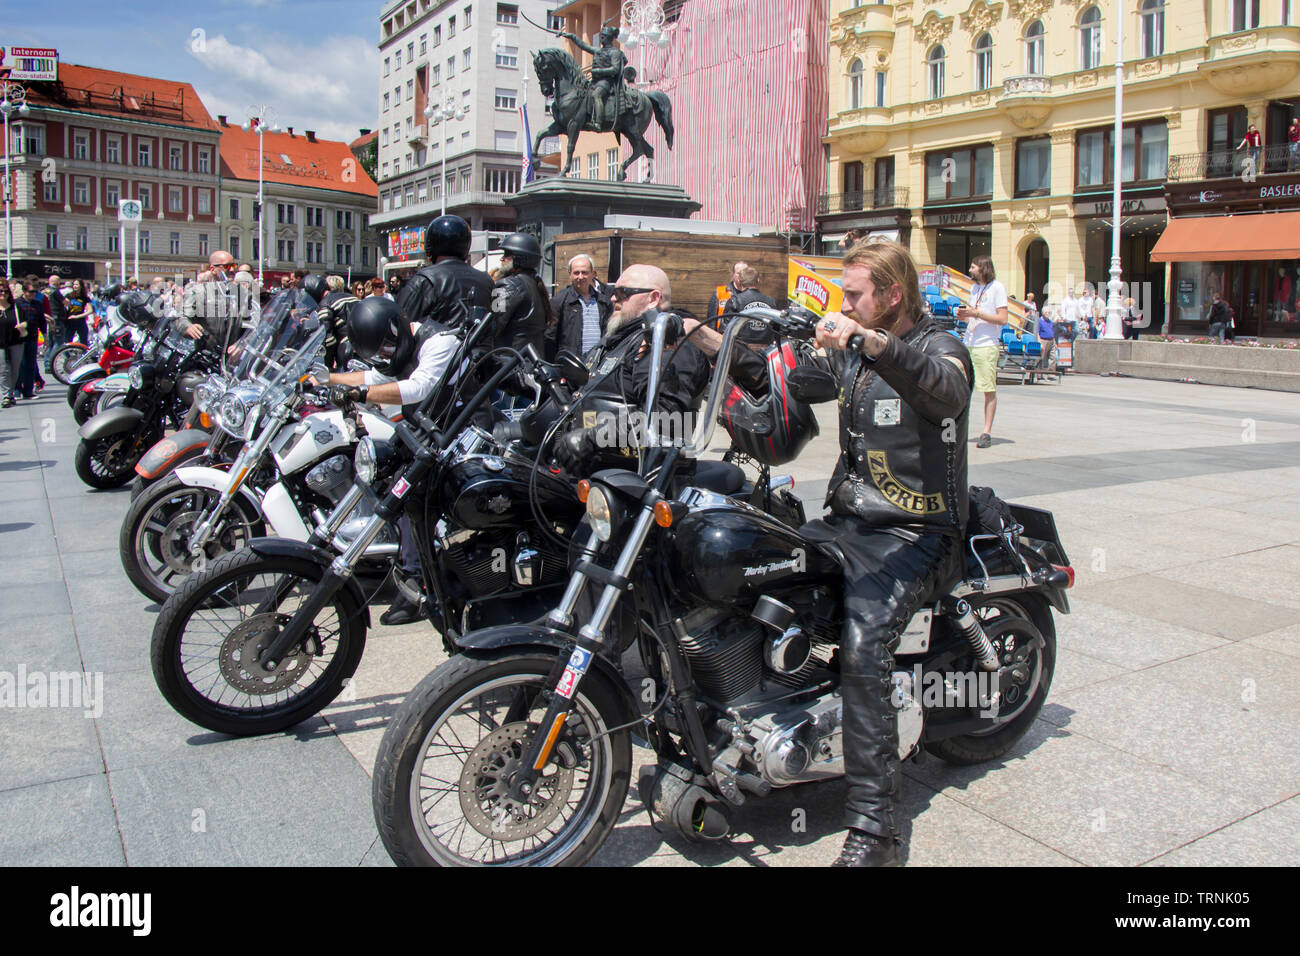 ZAGREB, KROATIEN - JUNI 01 Gruppe von Motorrad Harley Davidson Fans auf dem platz Ban Jelacic, am Juni 01, 2019, Zagreb, Kroatien. Stockfoto